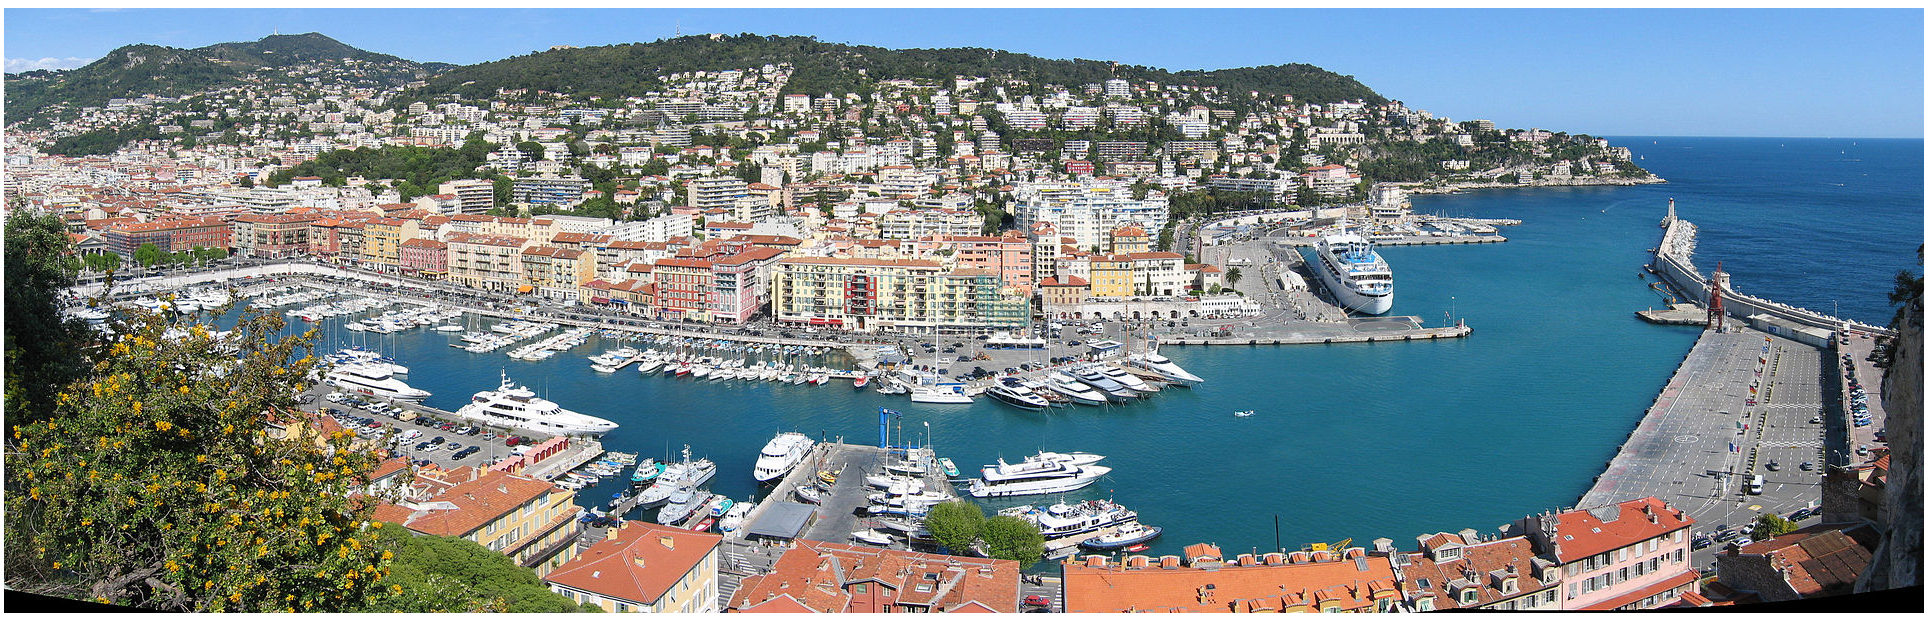 Porto de Nice, visto de perto a partir de uma posição elevada